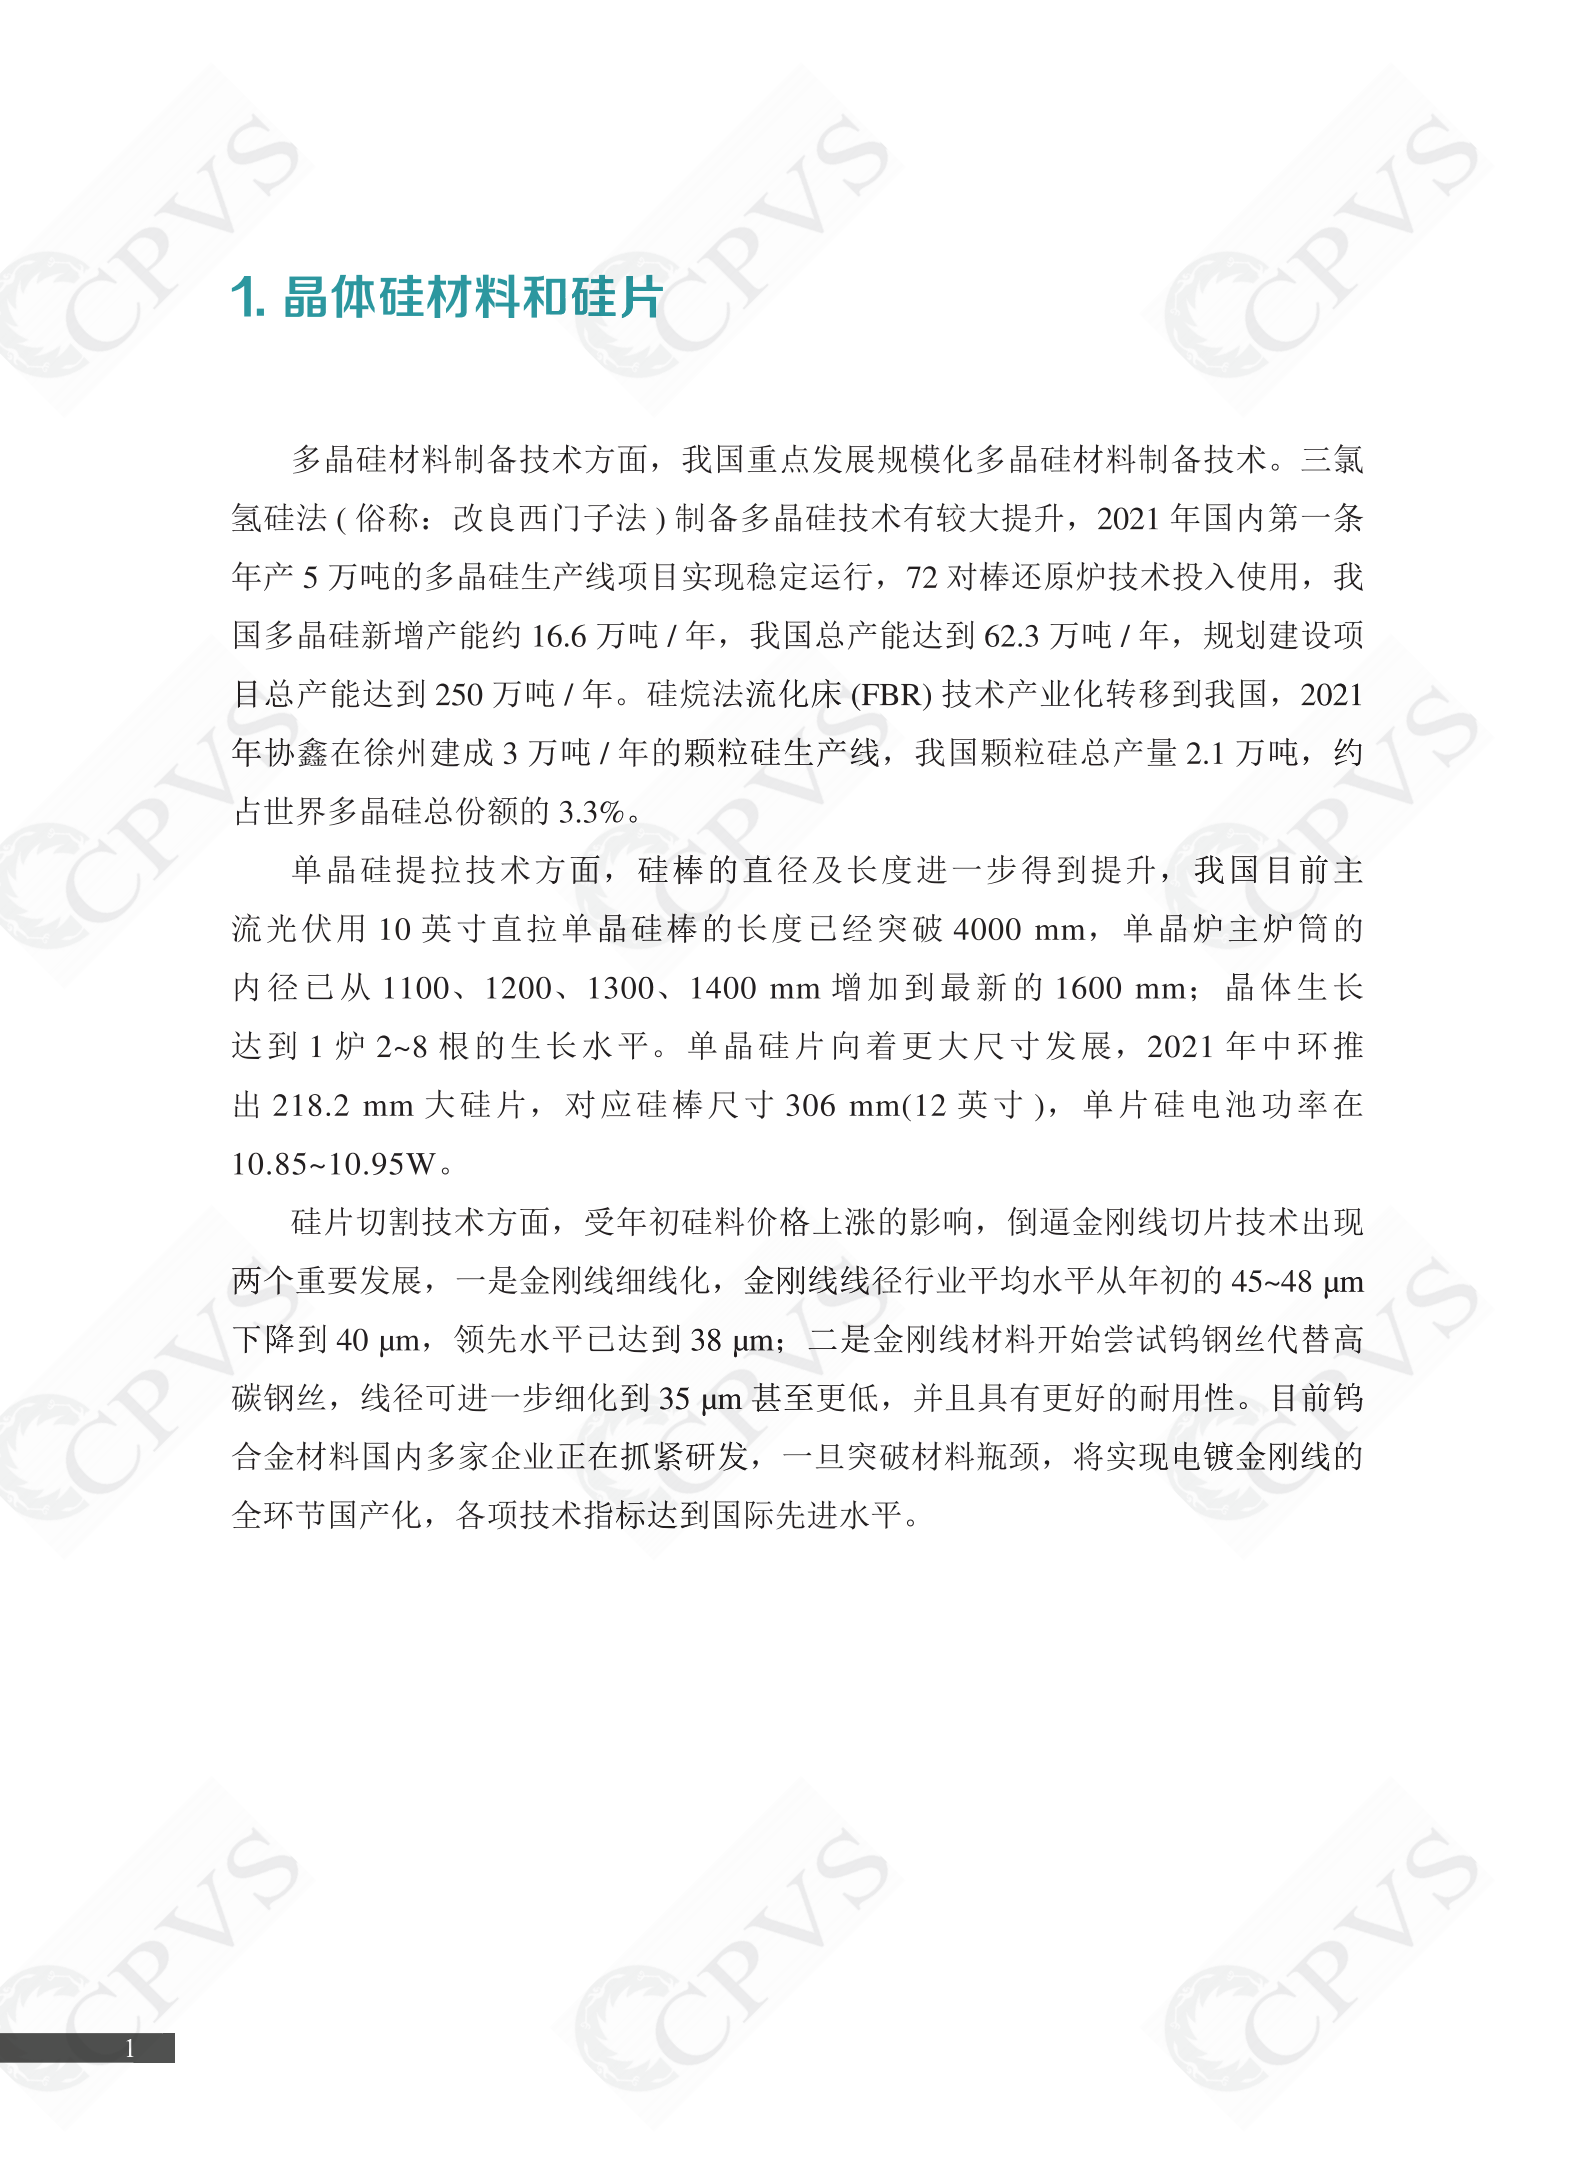 2022年中国光伏技术发展报告简版(1)_04.png